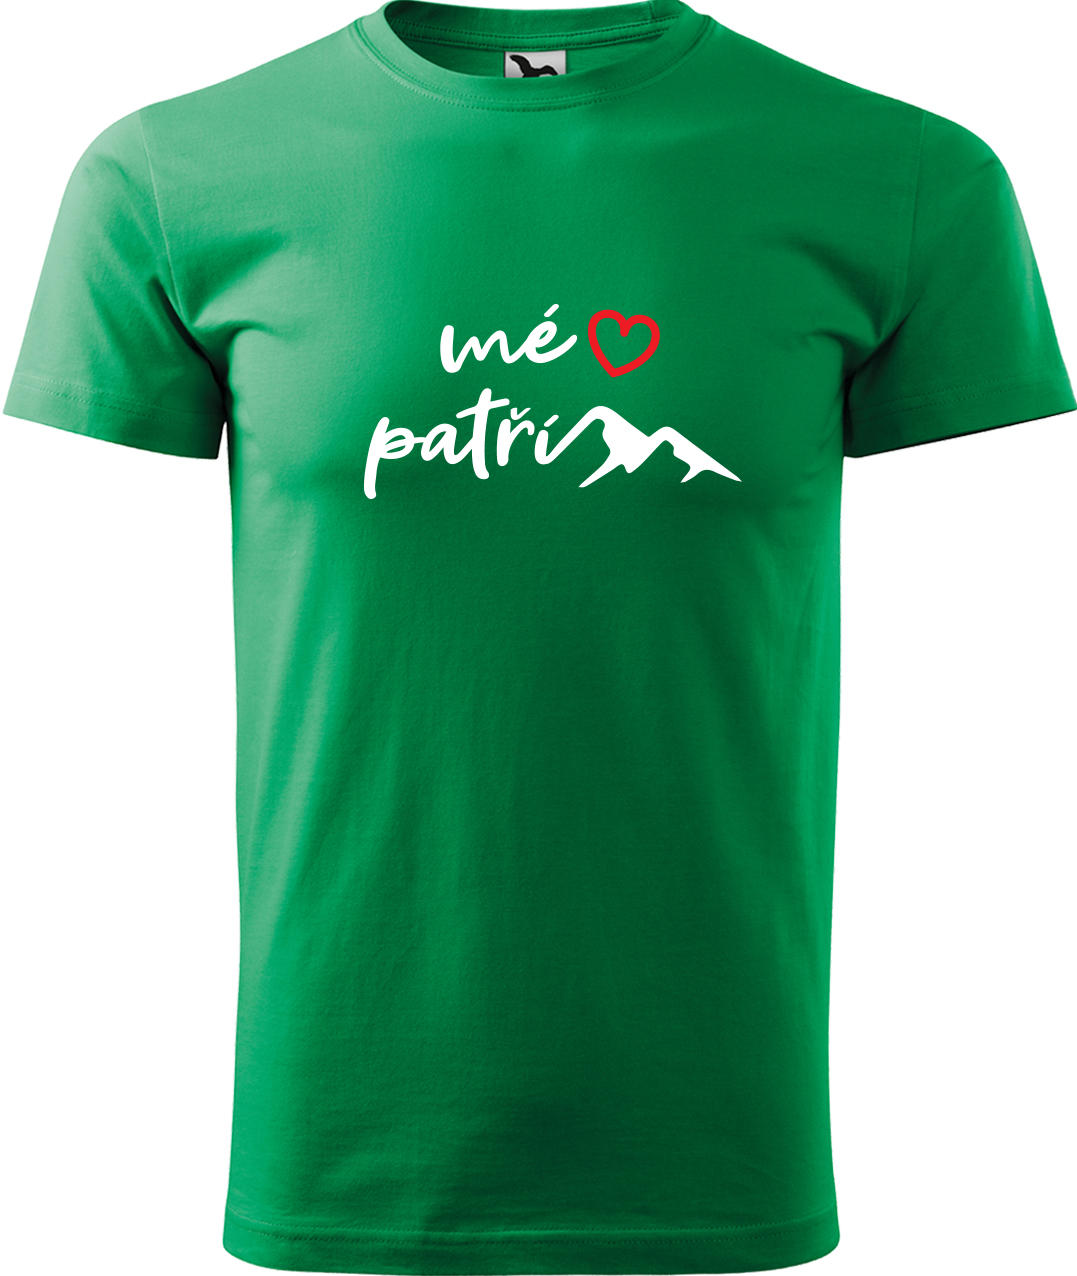 Pánské tričko na hory - Mé srdce patří horám Velikost: 3XL, Barva: Středně zelená (16), Střih: pánský